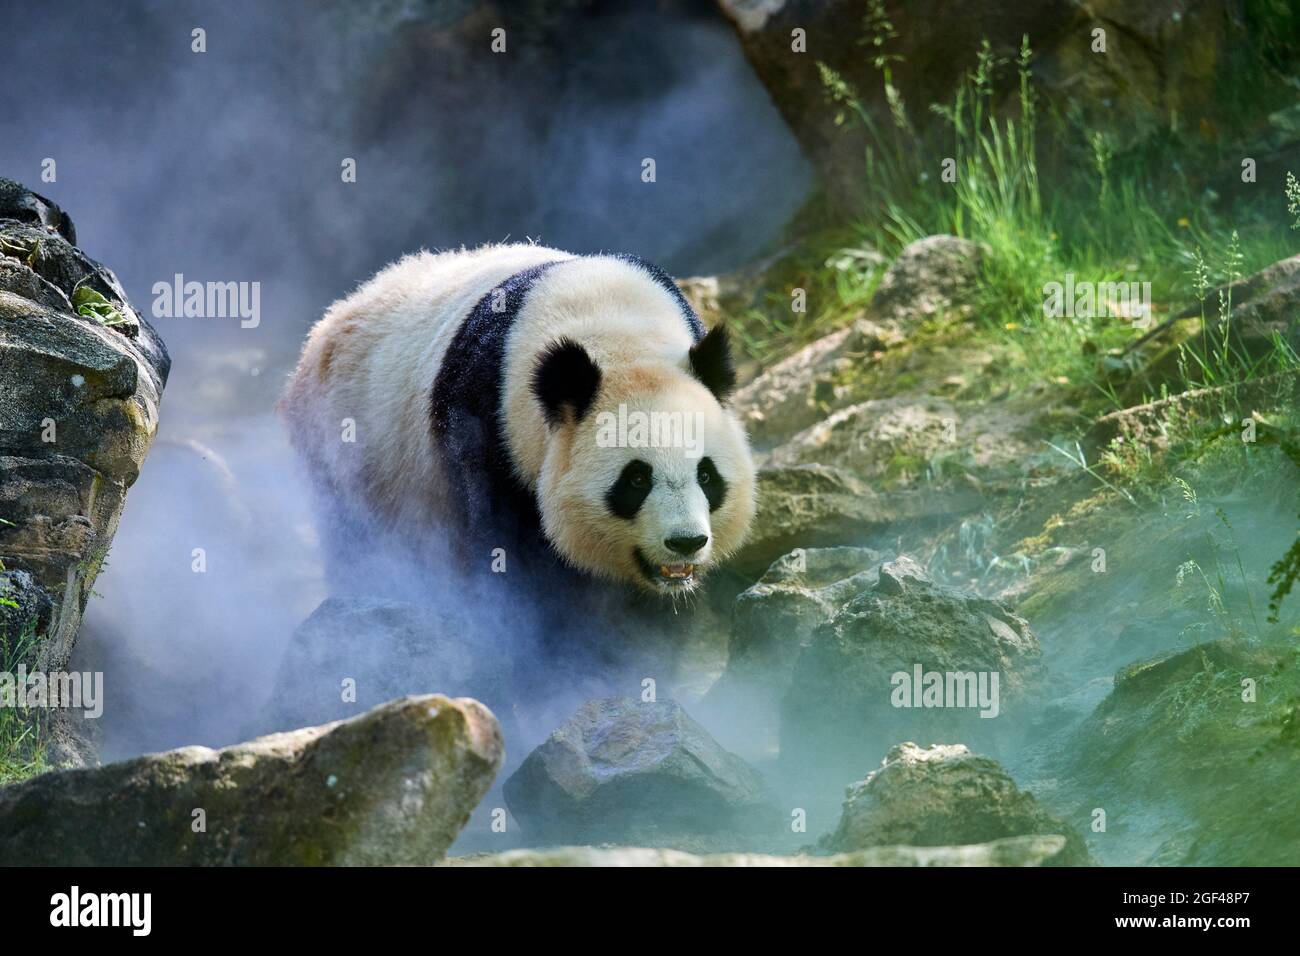 Panda gigante (Ailuropoda melanoleuca) hembra Huan Huan en su recinto en niebla, cautivo en el zoológico de Beauval, Saint Aignan sur Cher, Francia. La niebla Foto de stock